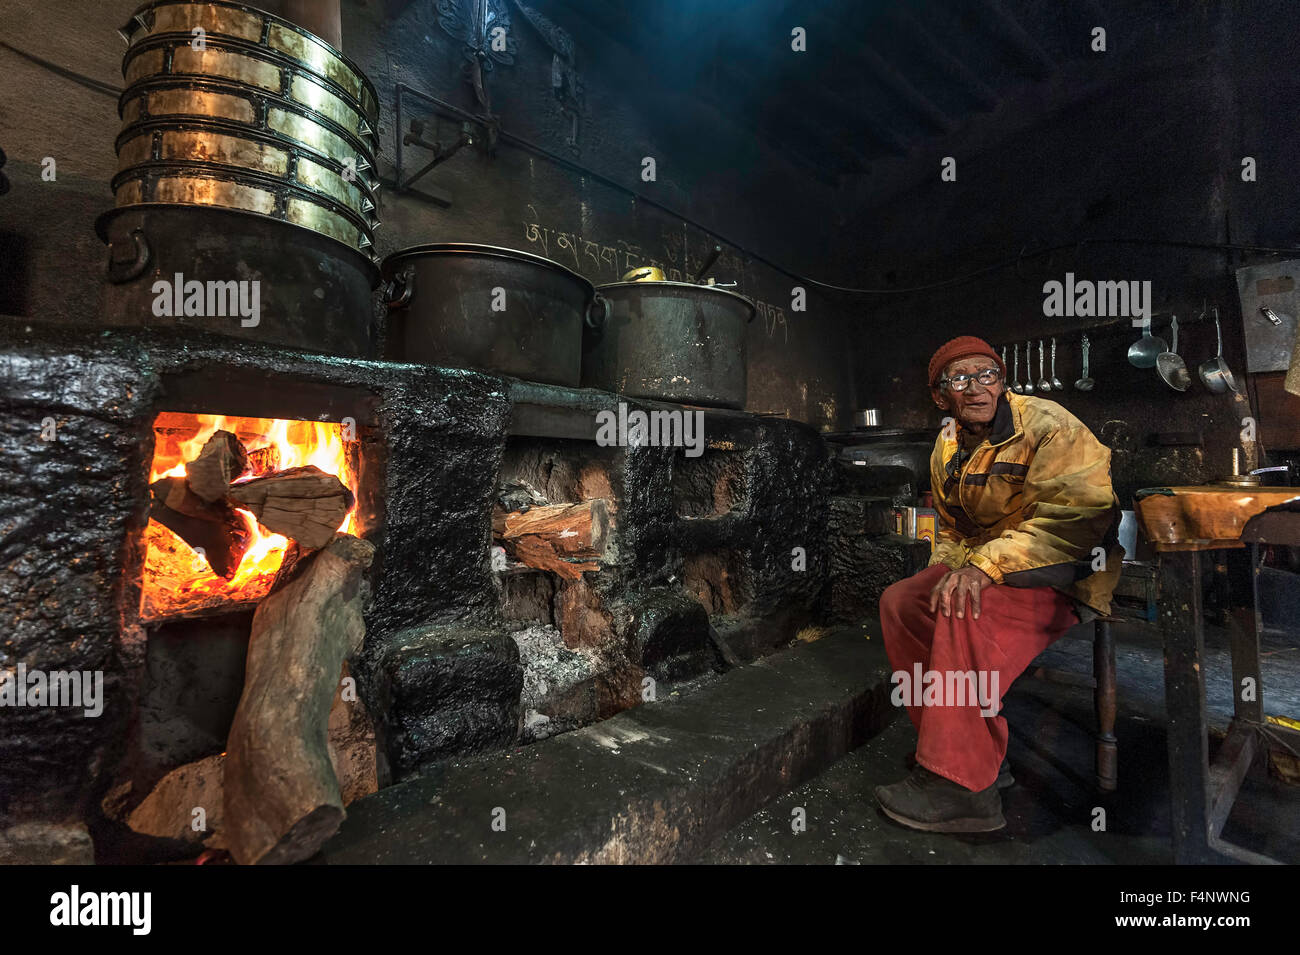 Vieux moine est assis dans la cuisine à côté de l'incendie. Banque D'Images